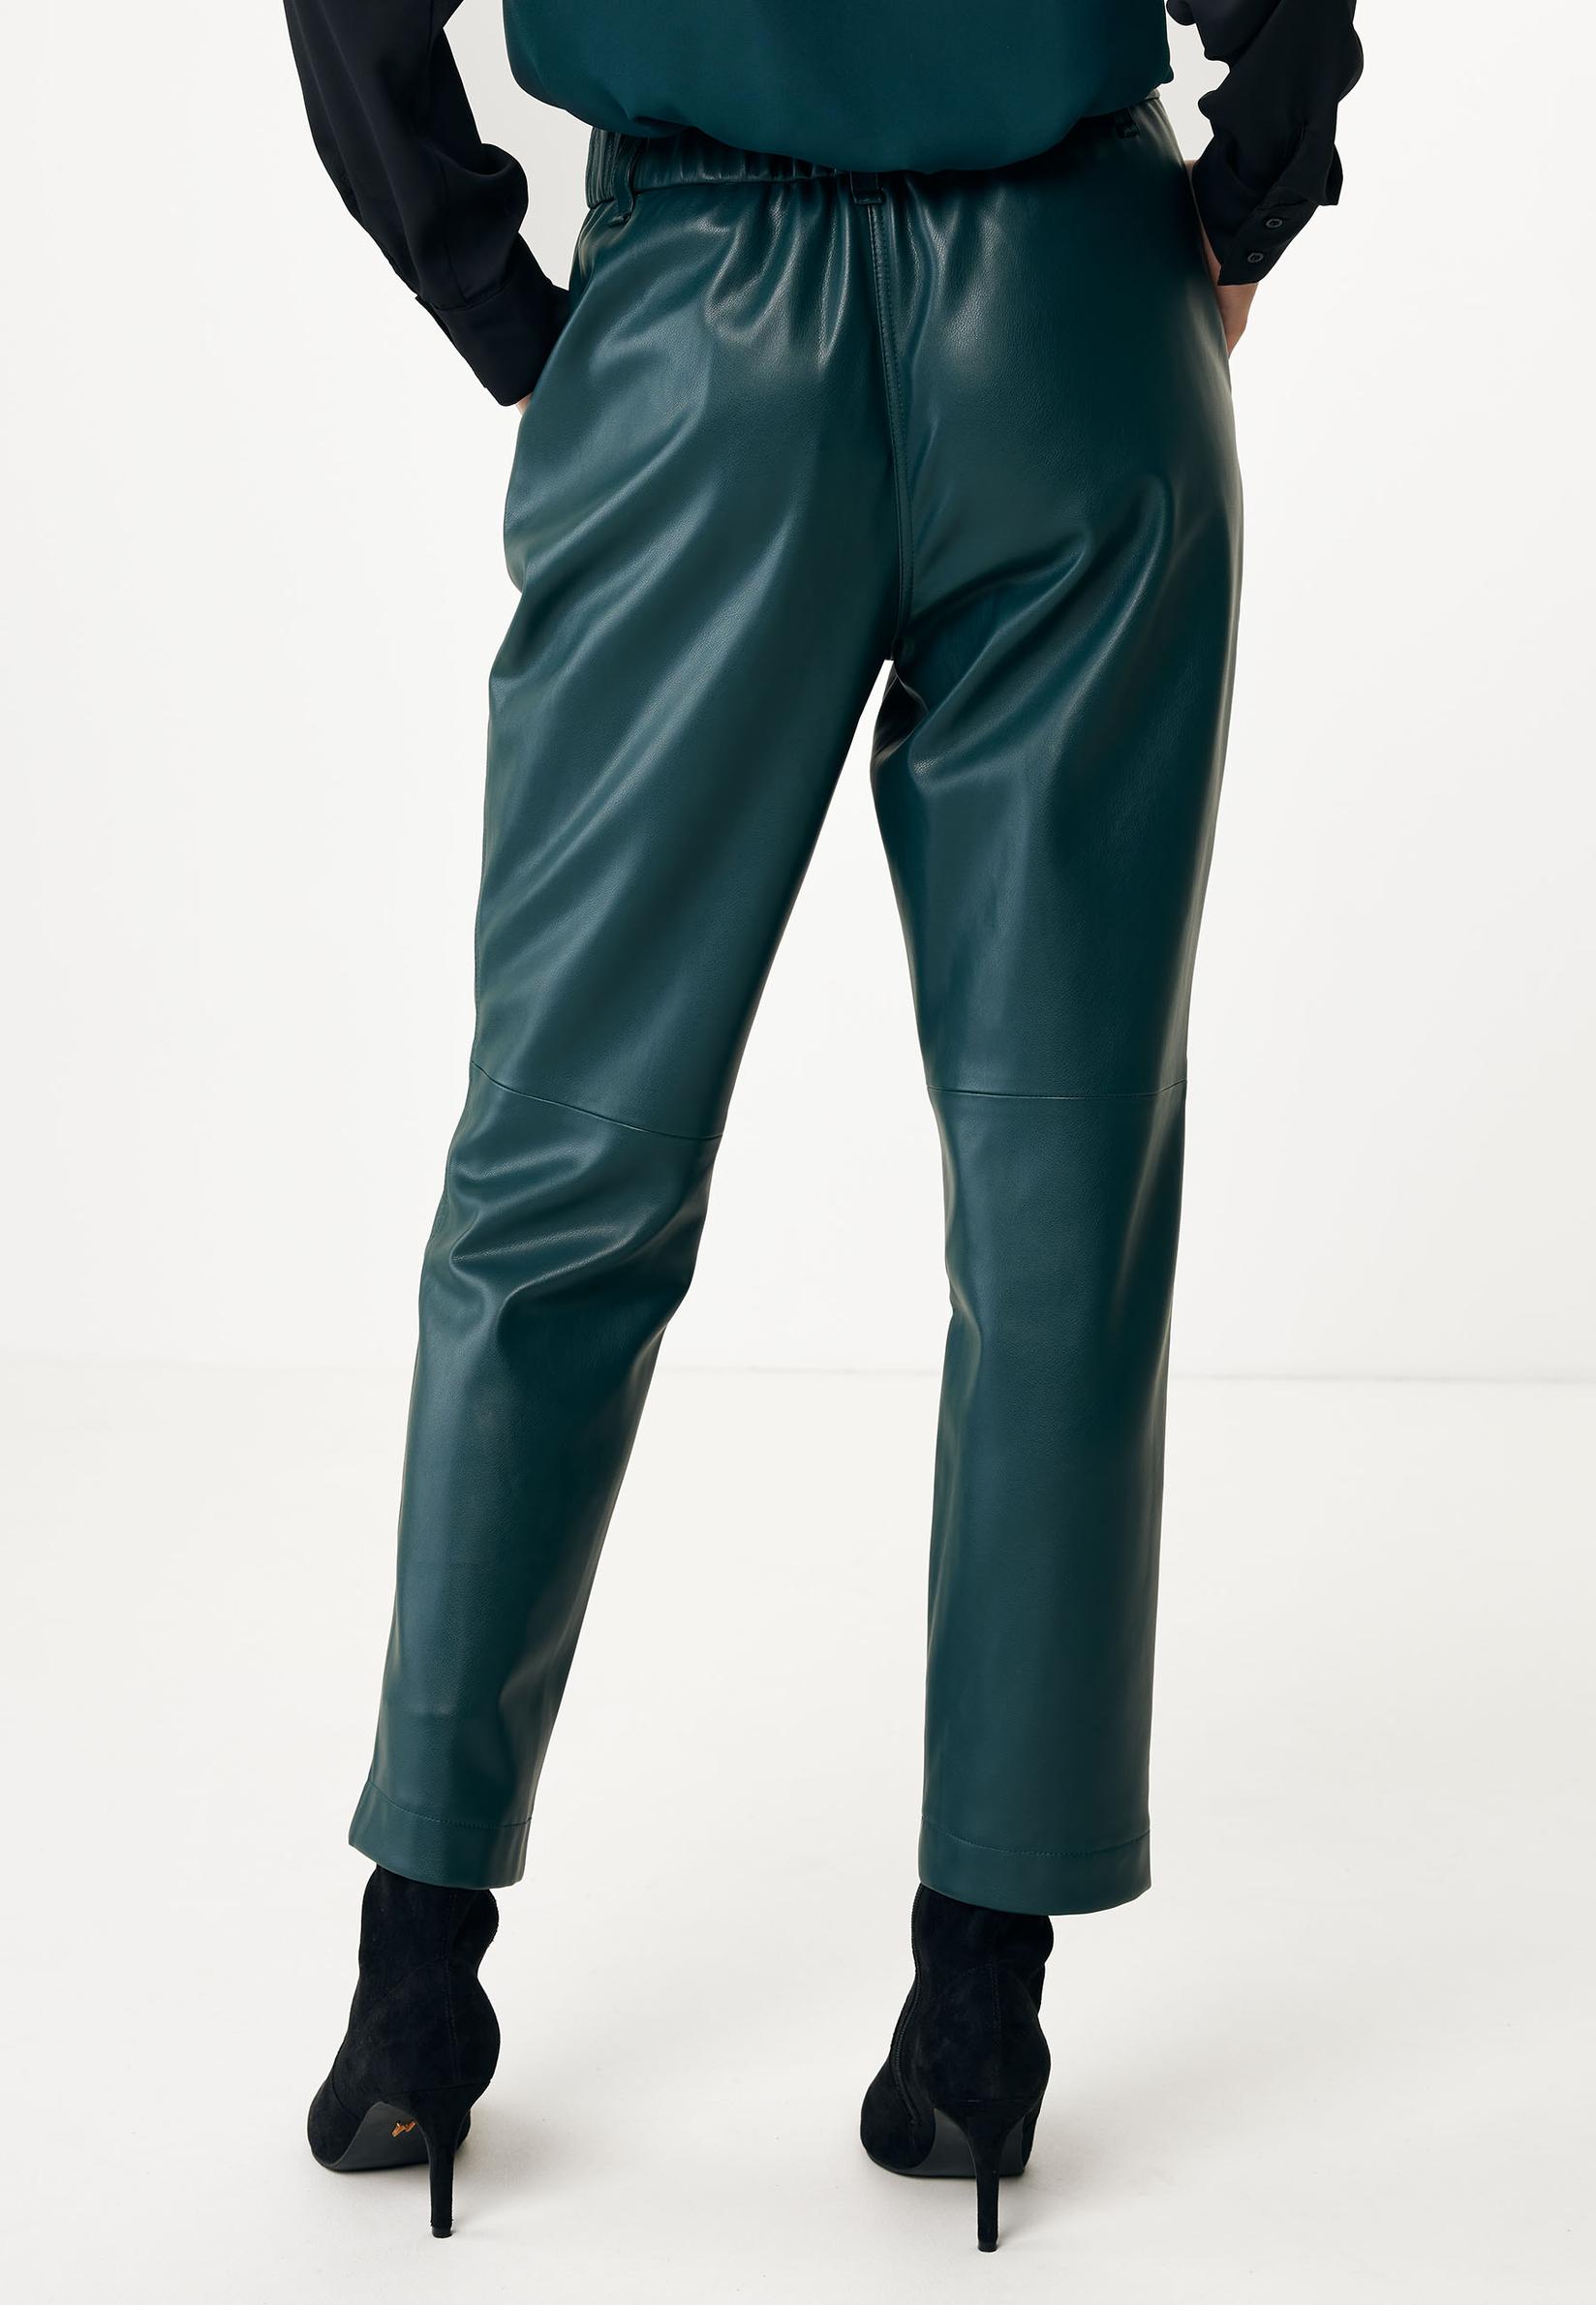 Selected image for MEXX Ženske pantalone zelene